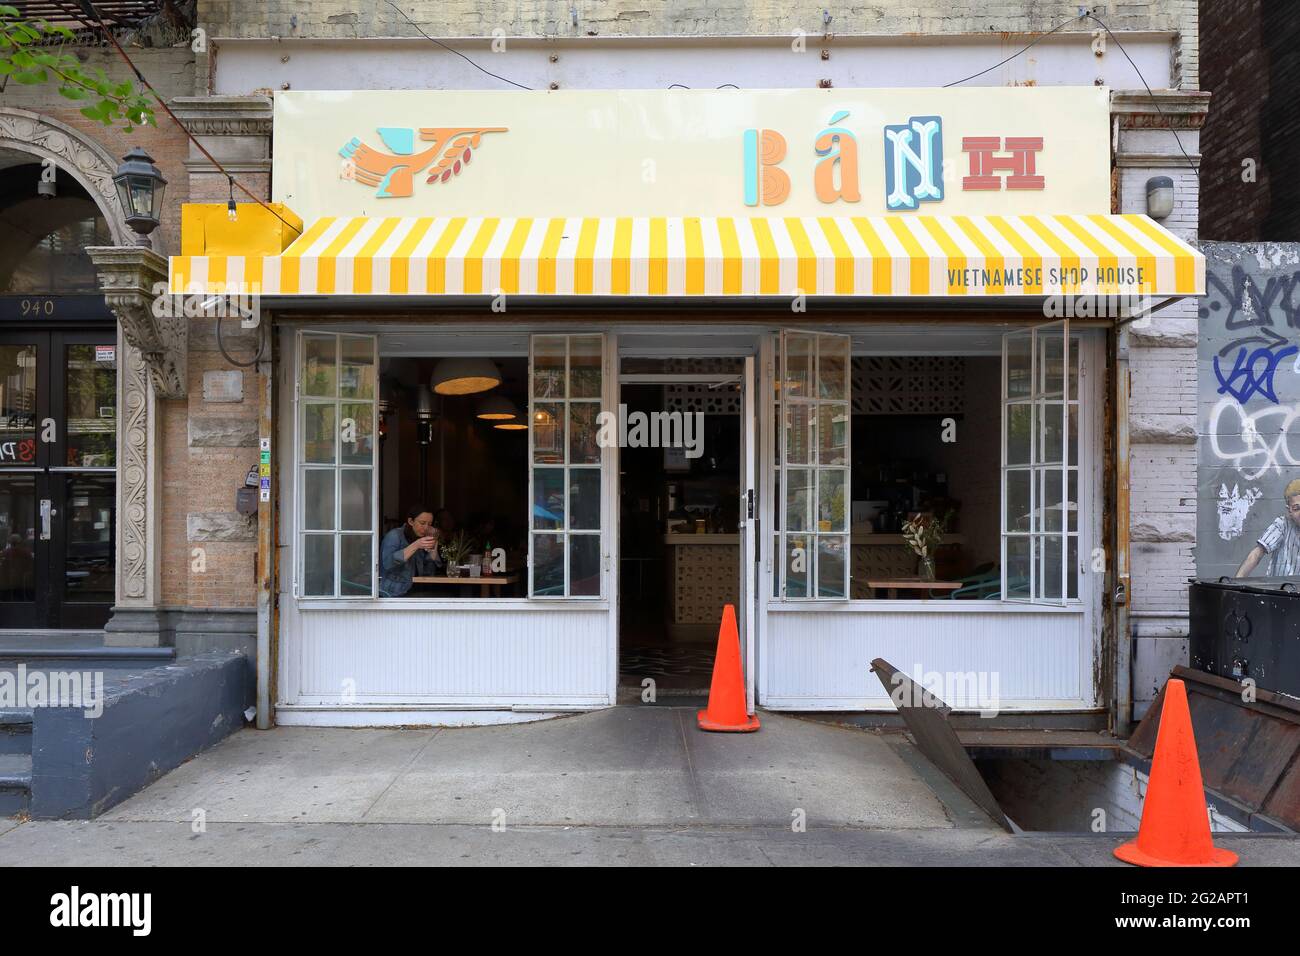 Bánh Vietnamien Shop House, 942 Amsterdam Ave, New York, NY. Façade extérieure d'un restaurant vietnamien dans la vallée de Manhattan Banque D'Images